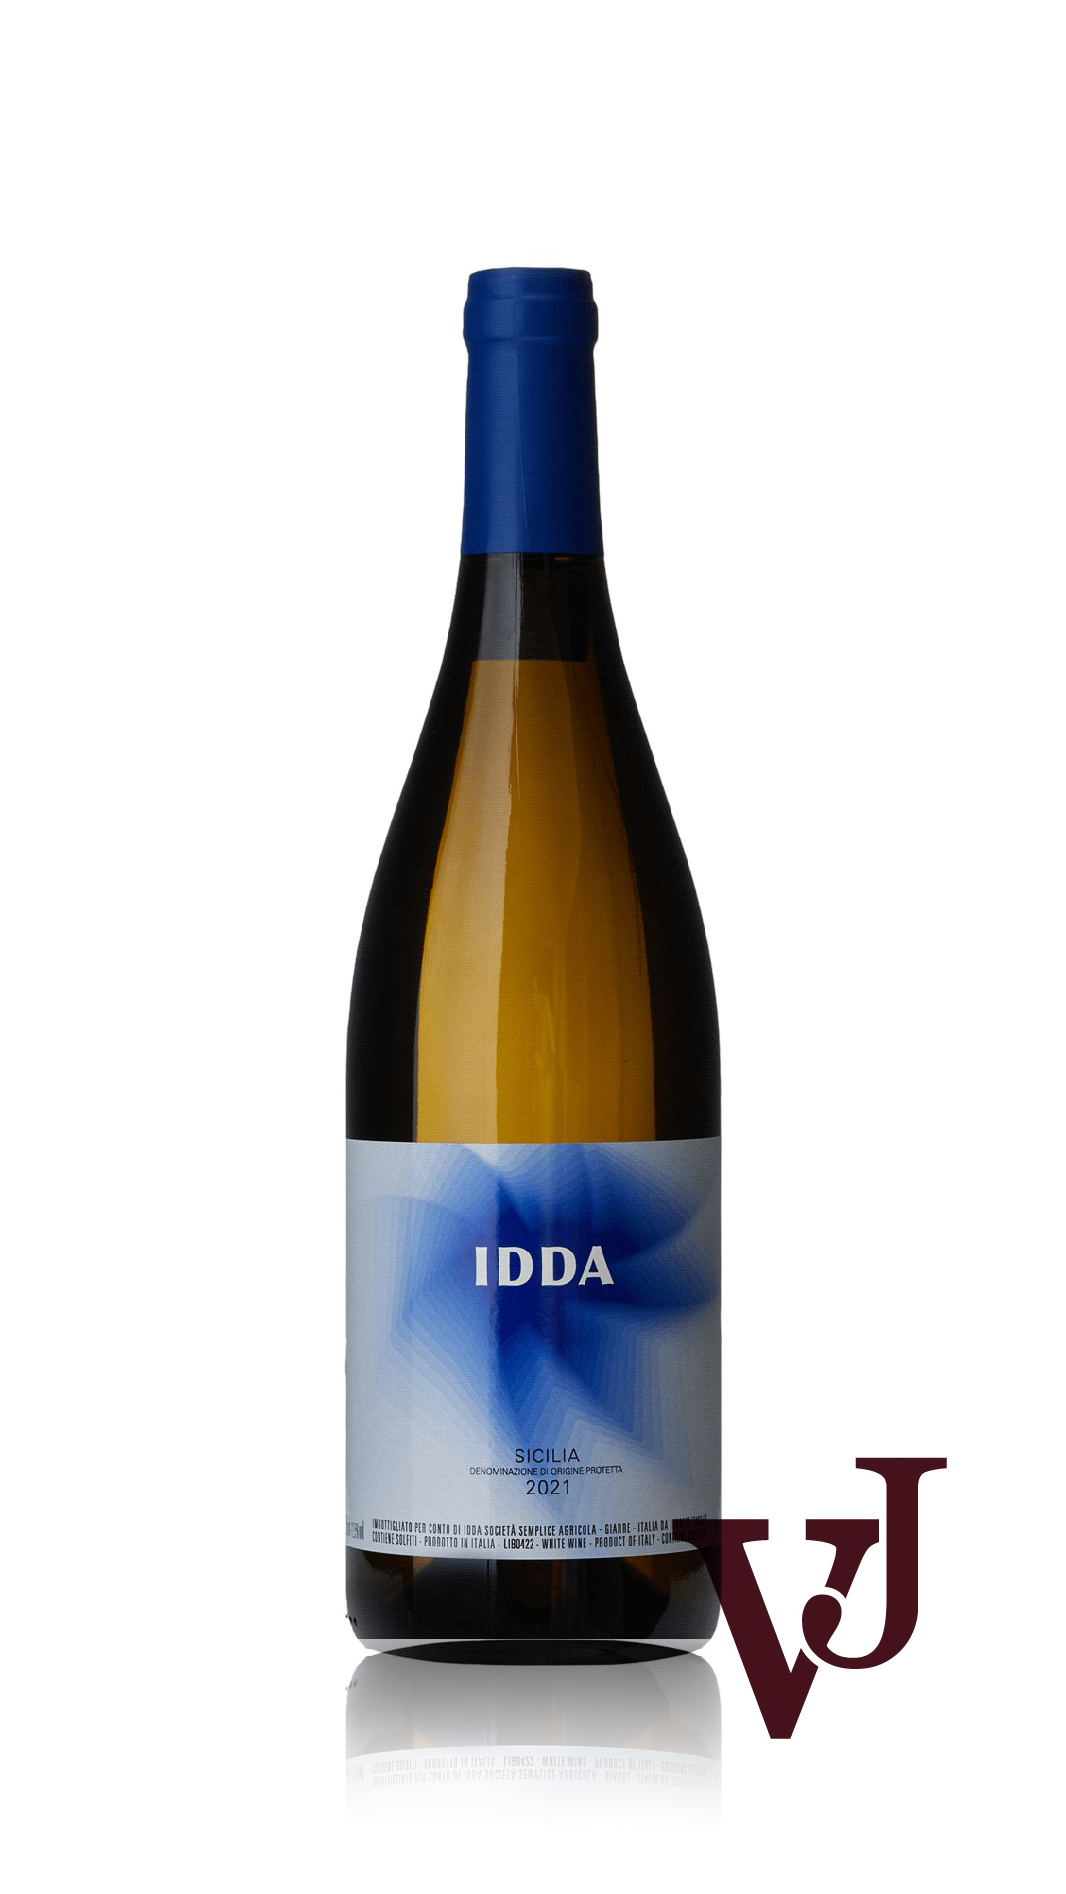 Vitt Vin - Gaja Idda Etna Bianco artikel nummer 5466501 från producenten Gaja från området Italien